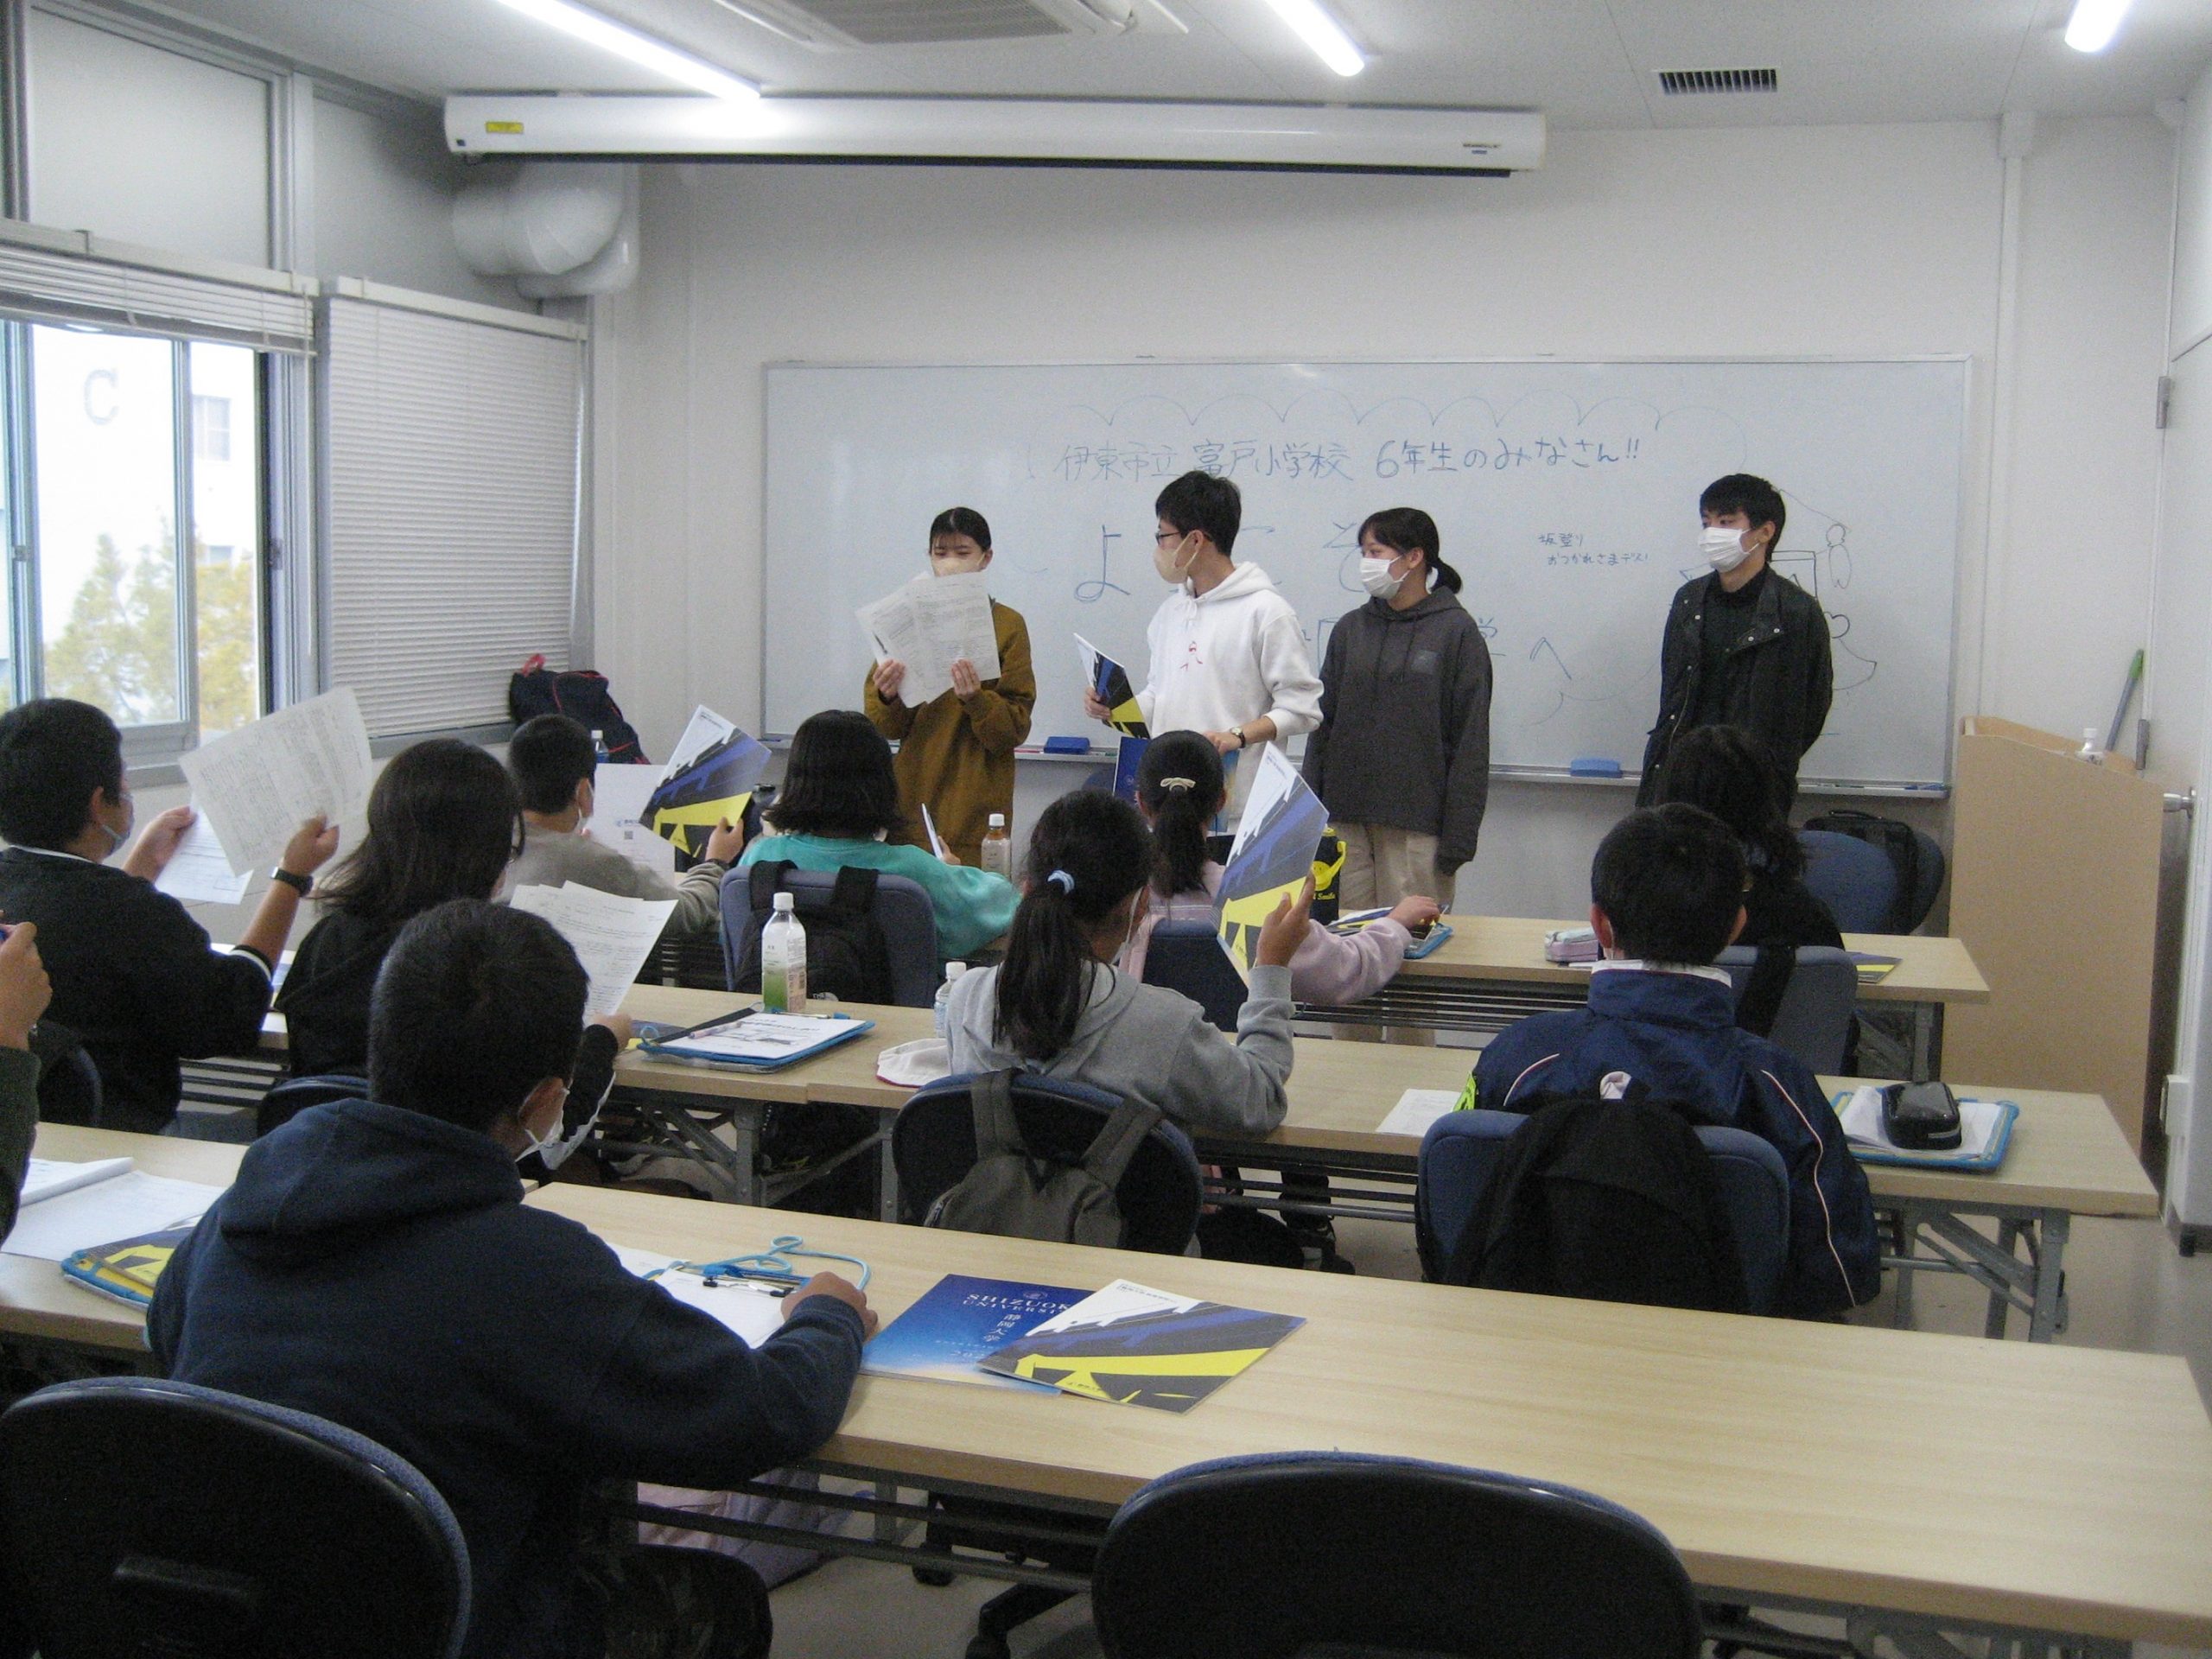 静岡大学教育学部 伊東市立富戸小学校6年生が 修学旅行で静大教育学部を来訪